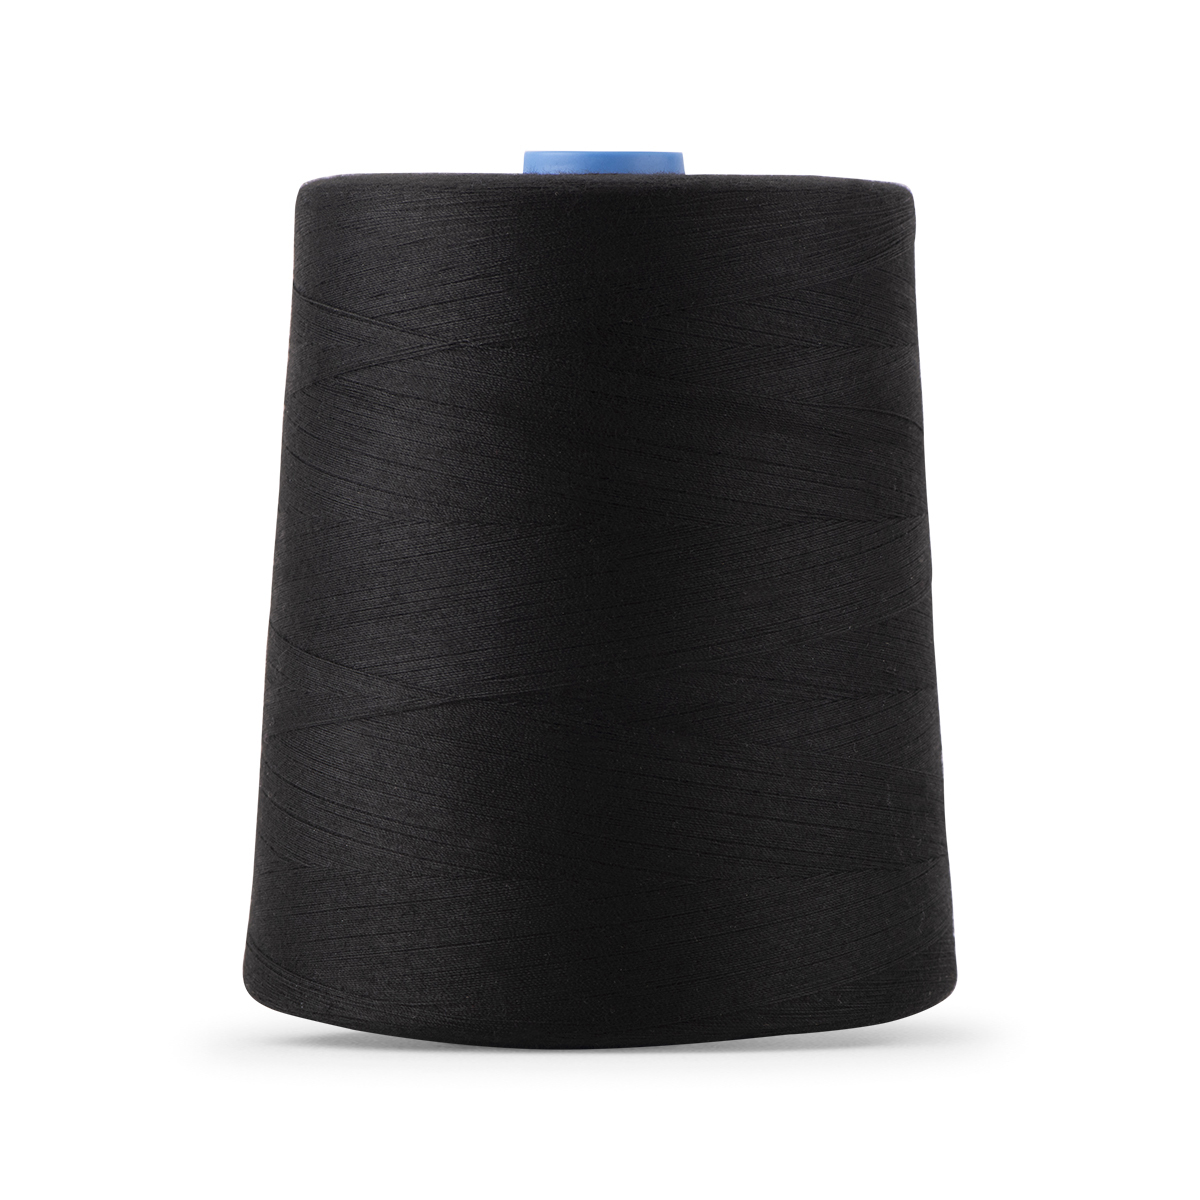 NEX™ Black Cotton Sewing Thread, 10ct.